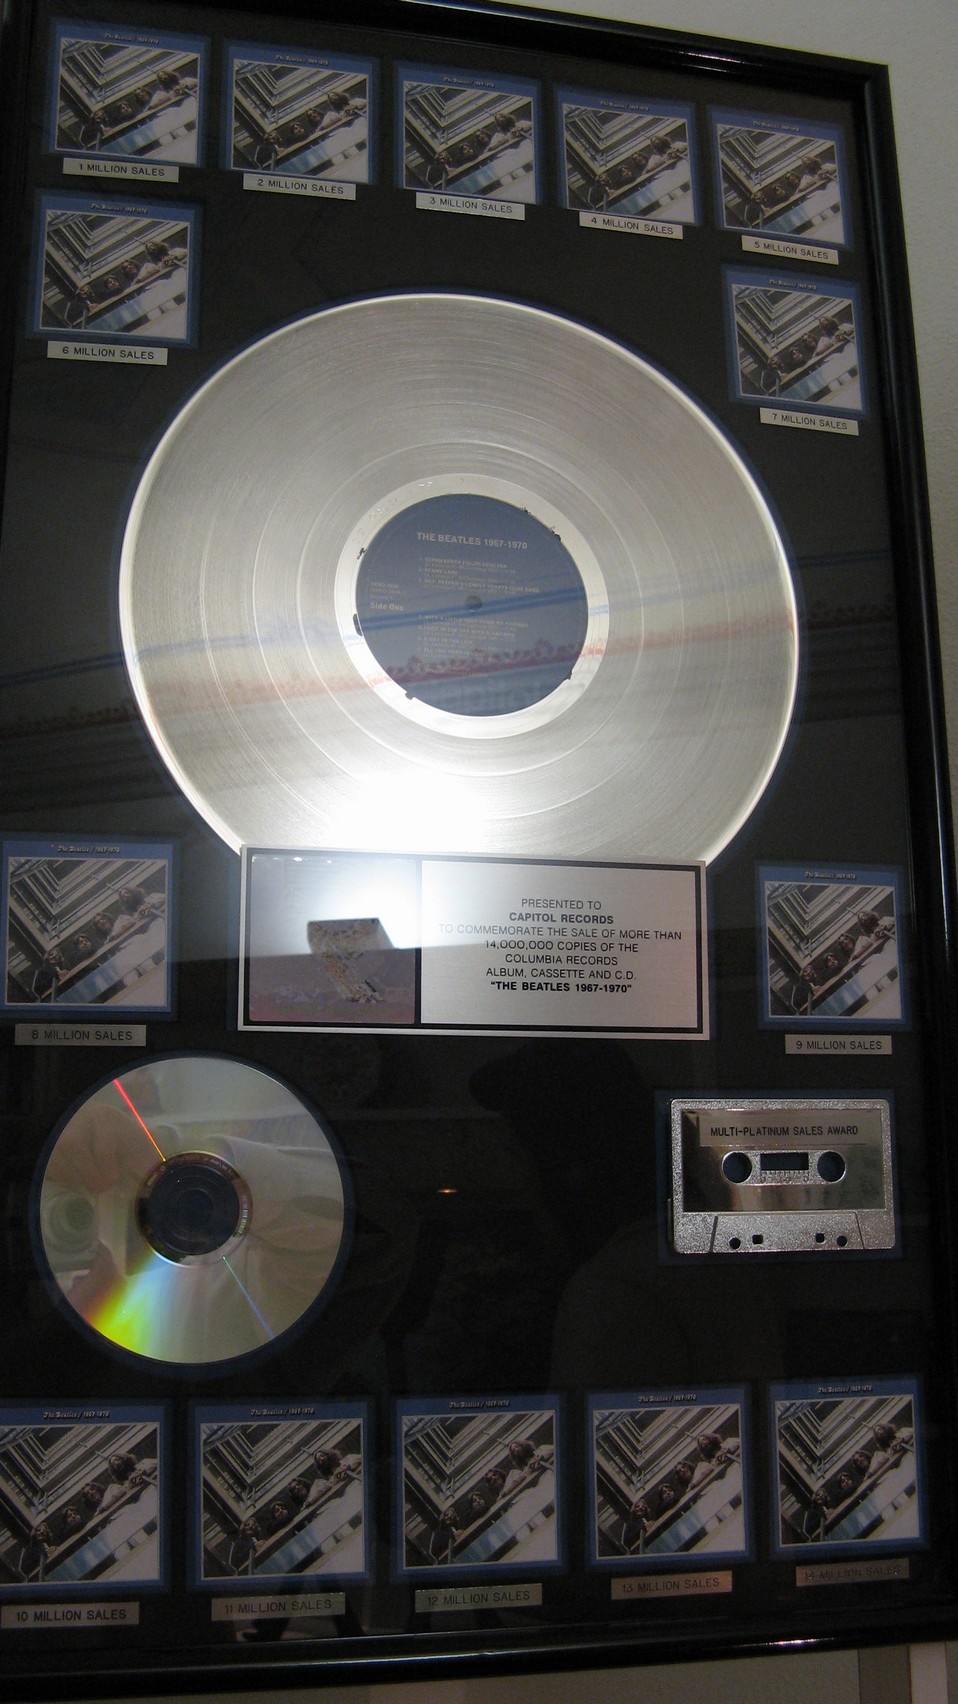 n_12- Disco di platino per la vendita di oltre 14 milioni di copie dell'album dei Beatles 'The Beatles 1967-1970'.jpg